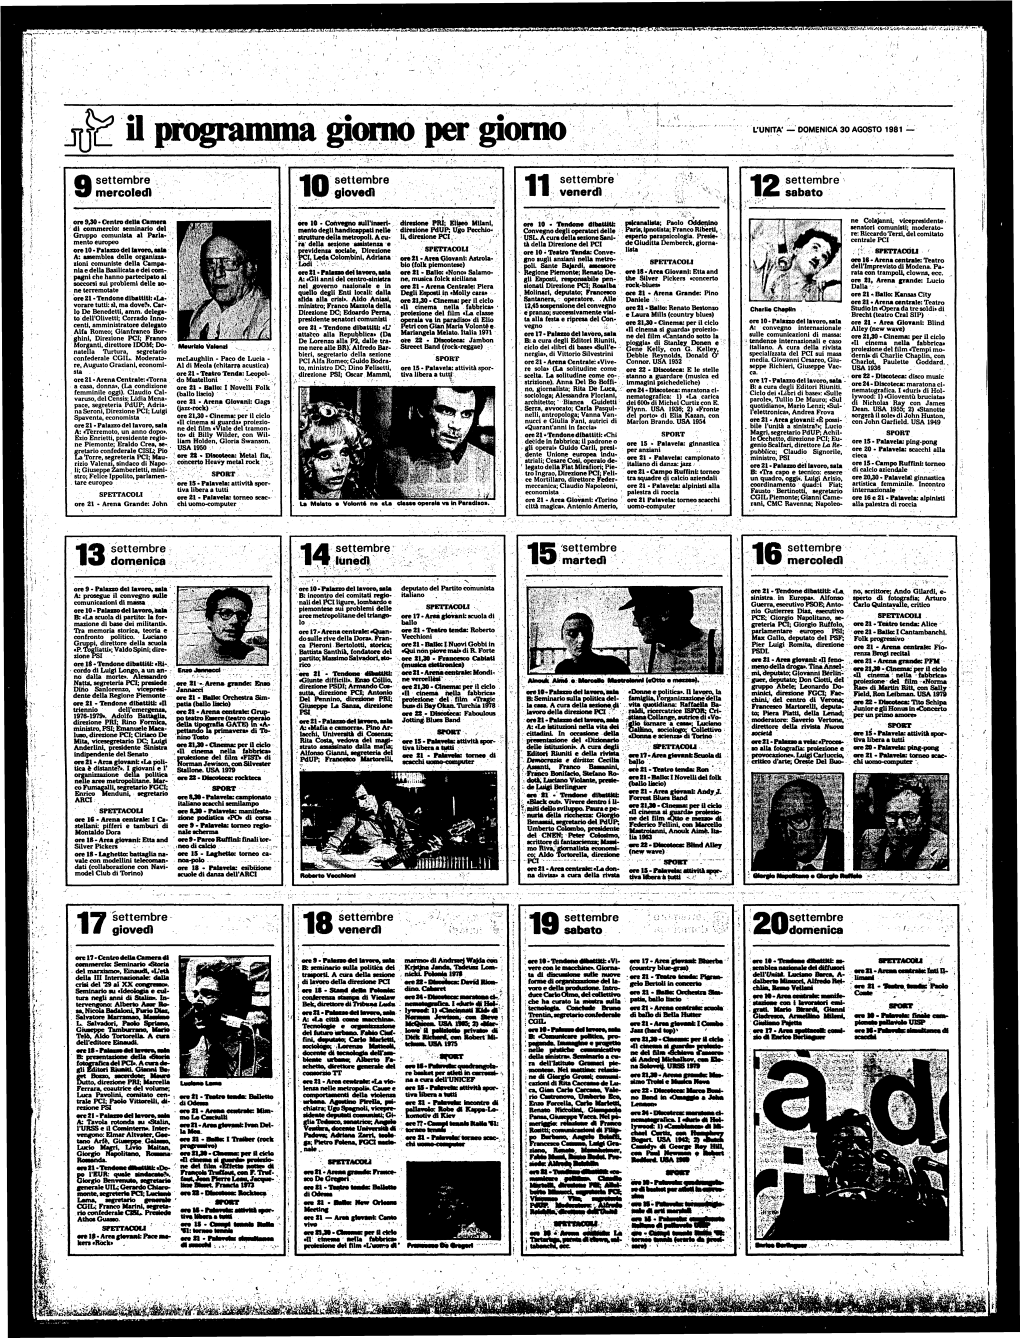 Il Programma L'unita' — DOMENICA 30 AGOSTO 1981 —